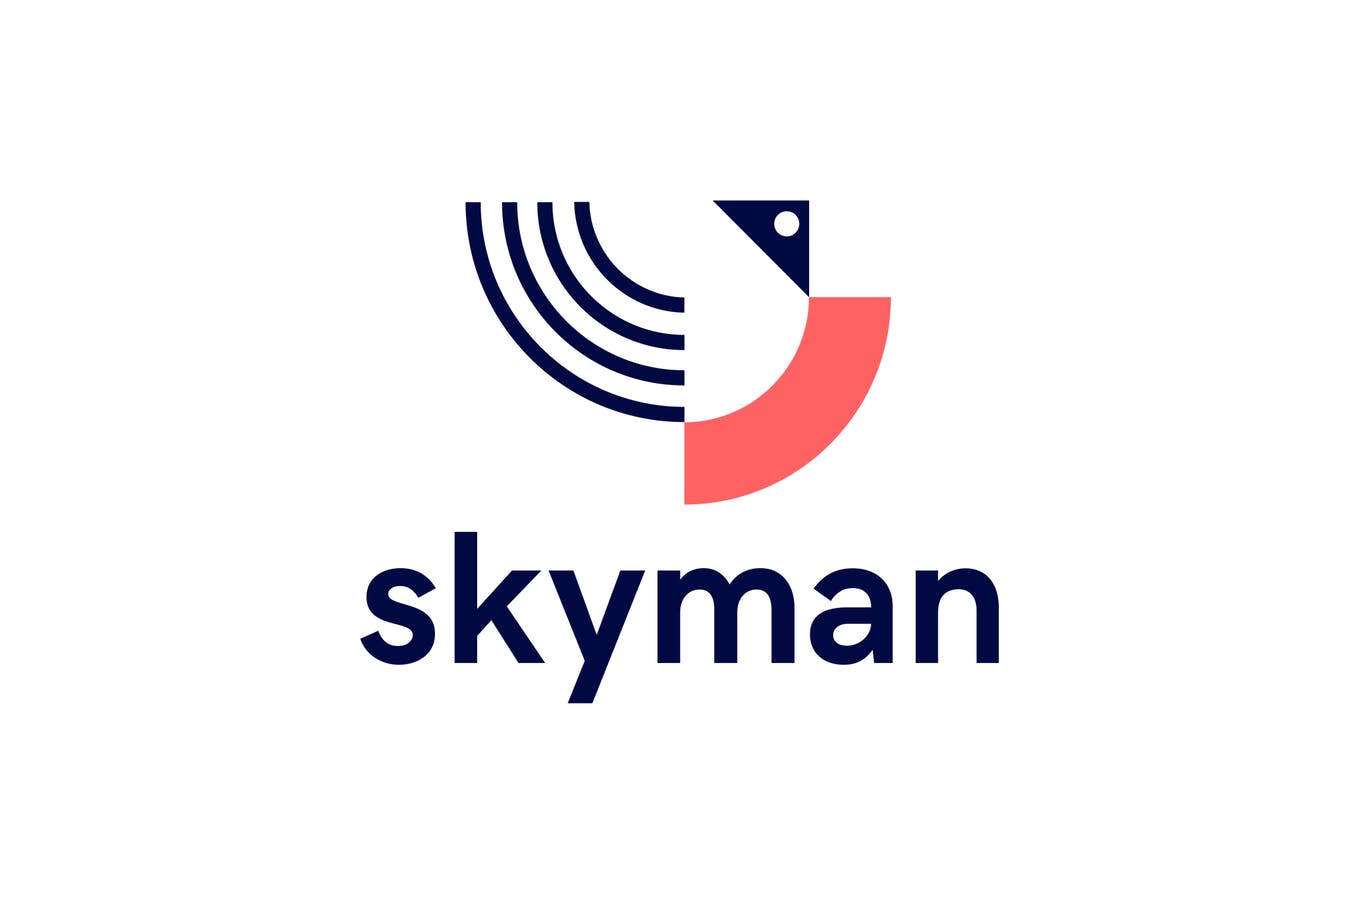 Skyman抽象几何图形Logo设计16图库精选模板 Skyman Logo插图